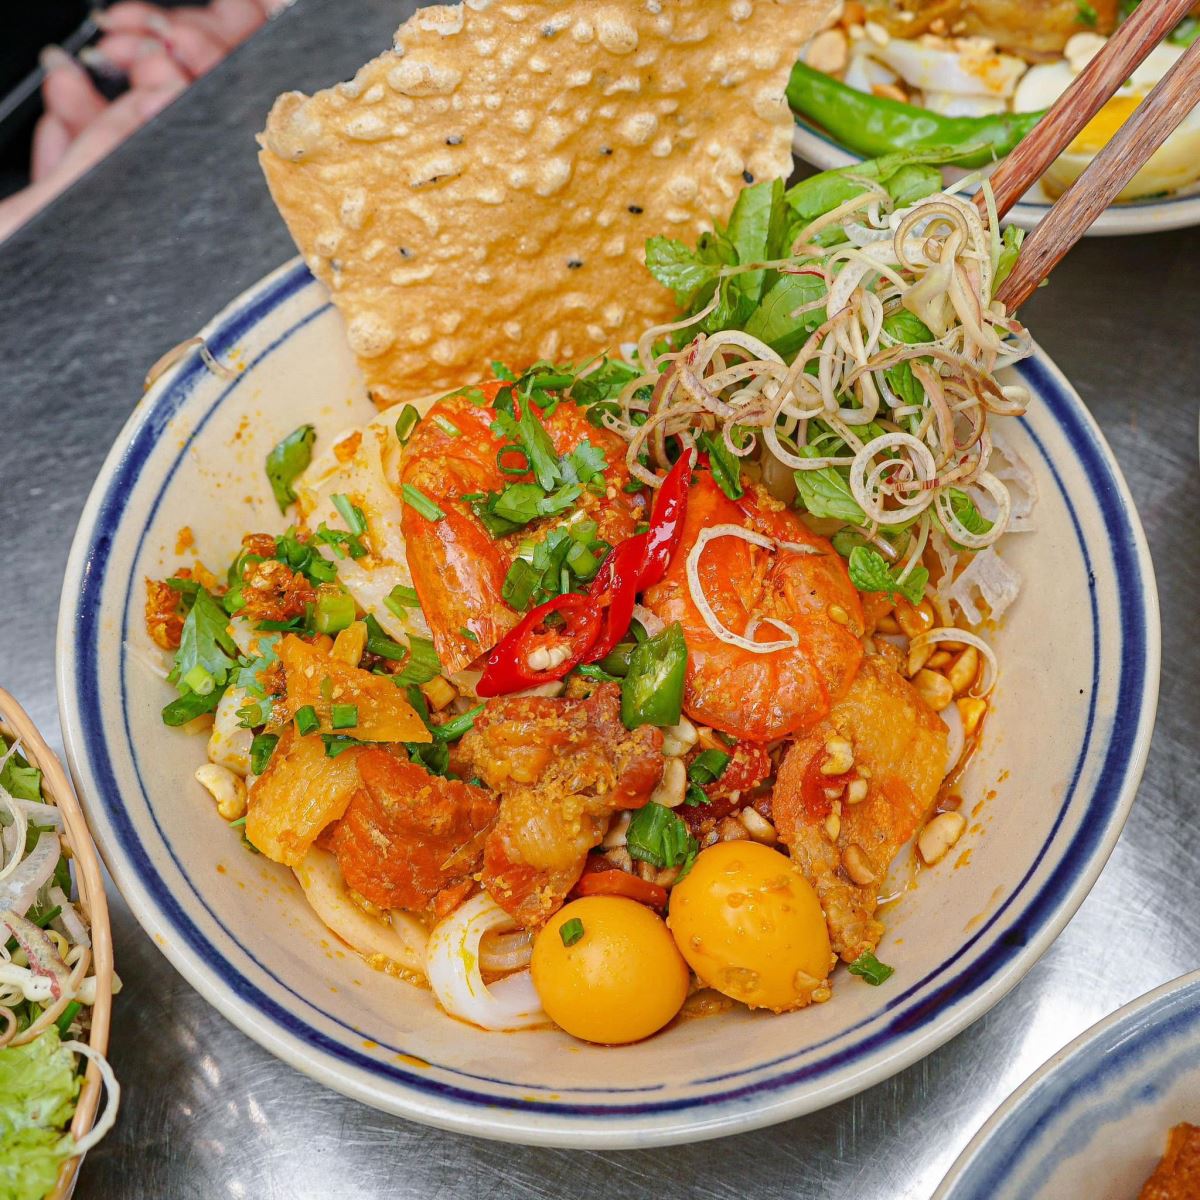 Mì Quảng là món ăn đặc trưng, là văn hóa của người miền Trung nói chung và người Quảng Nam nói riêng